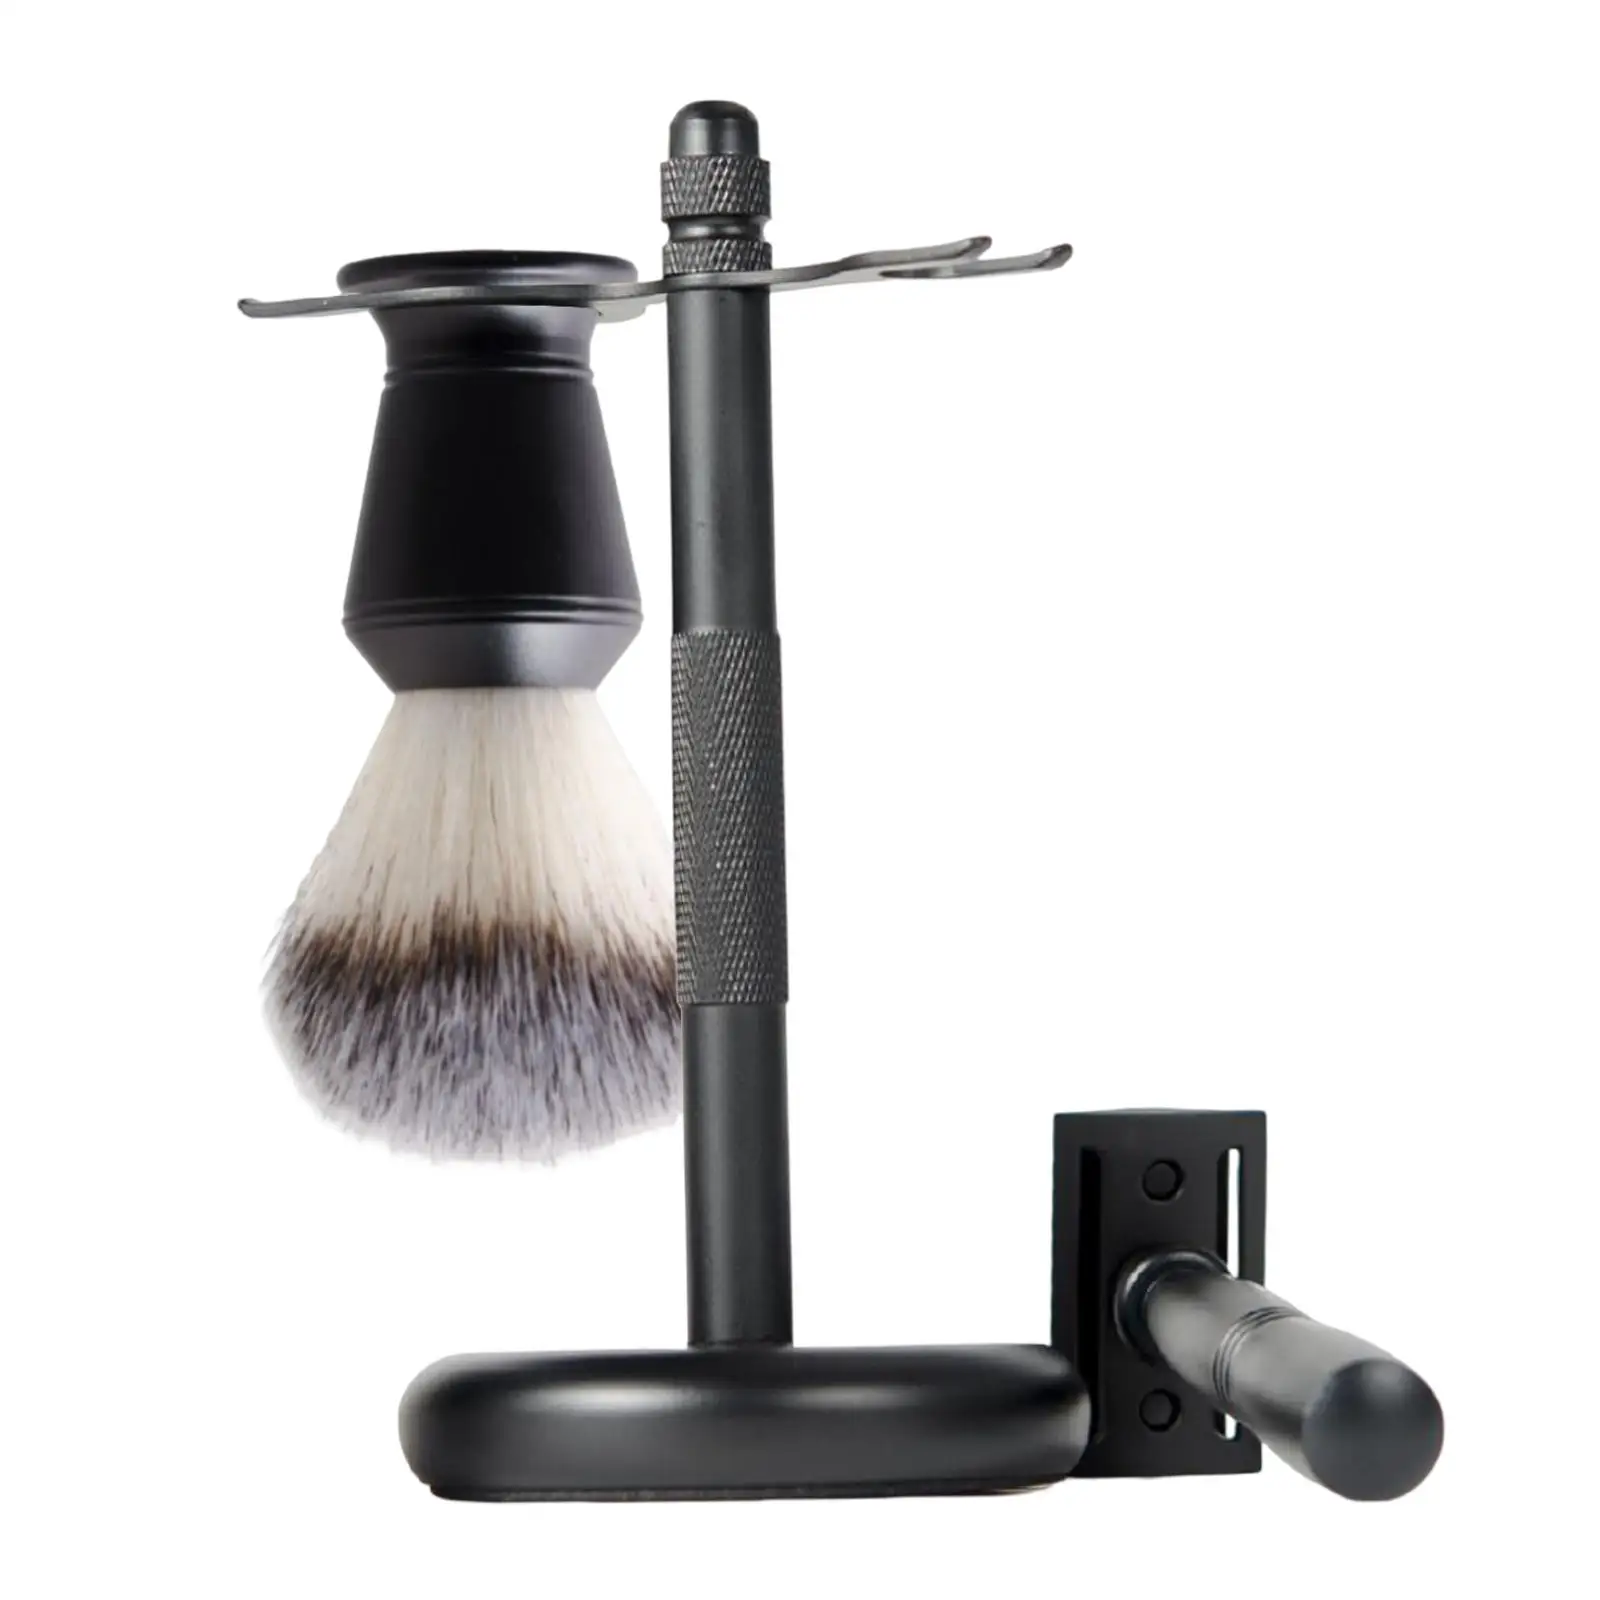 3x Shaving Kit for Men Black Elegant Shaving Cleaning Tool Shaving Razor+ Stand Holder +shaving Brush Set Father`s Day Gifts